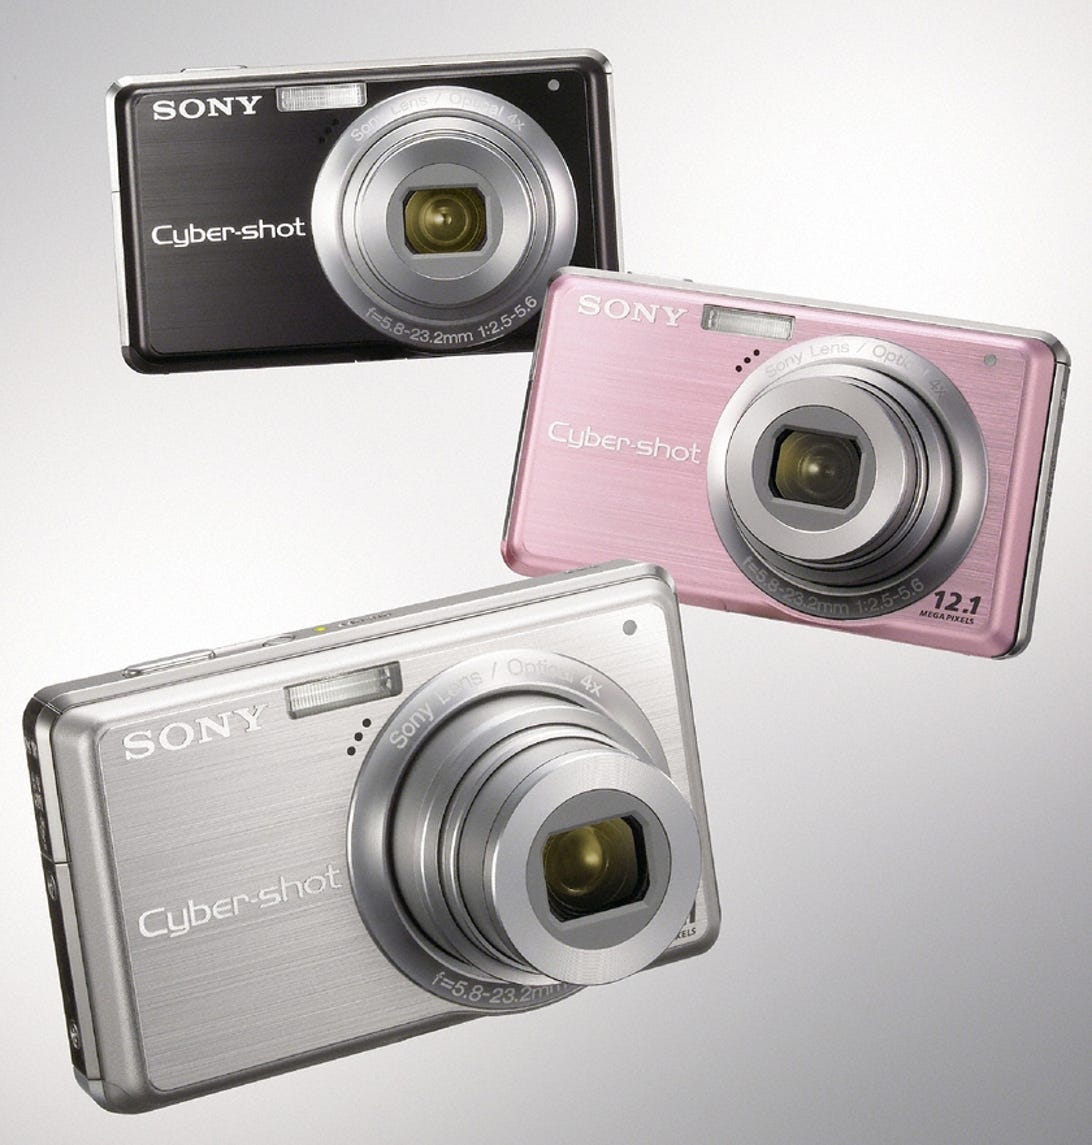 Sony Cyber-shot DSC-S980